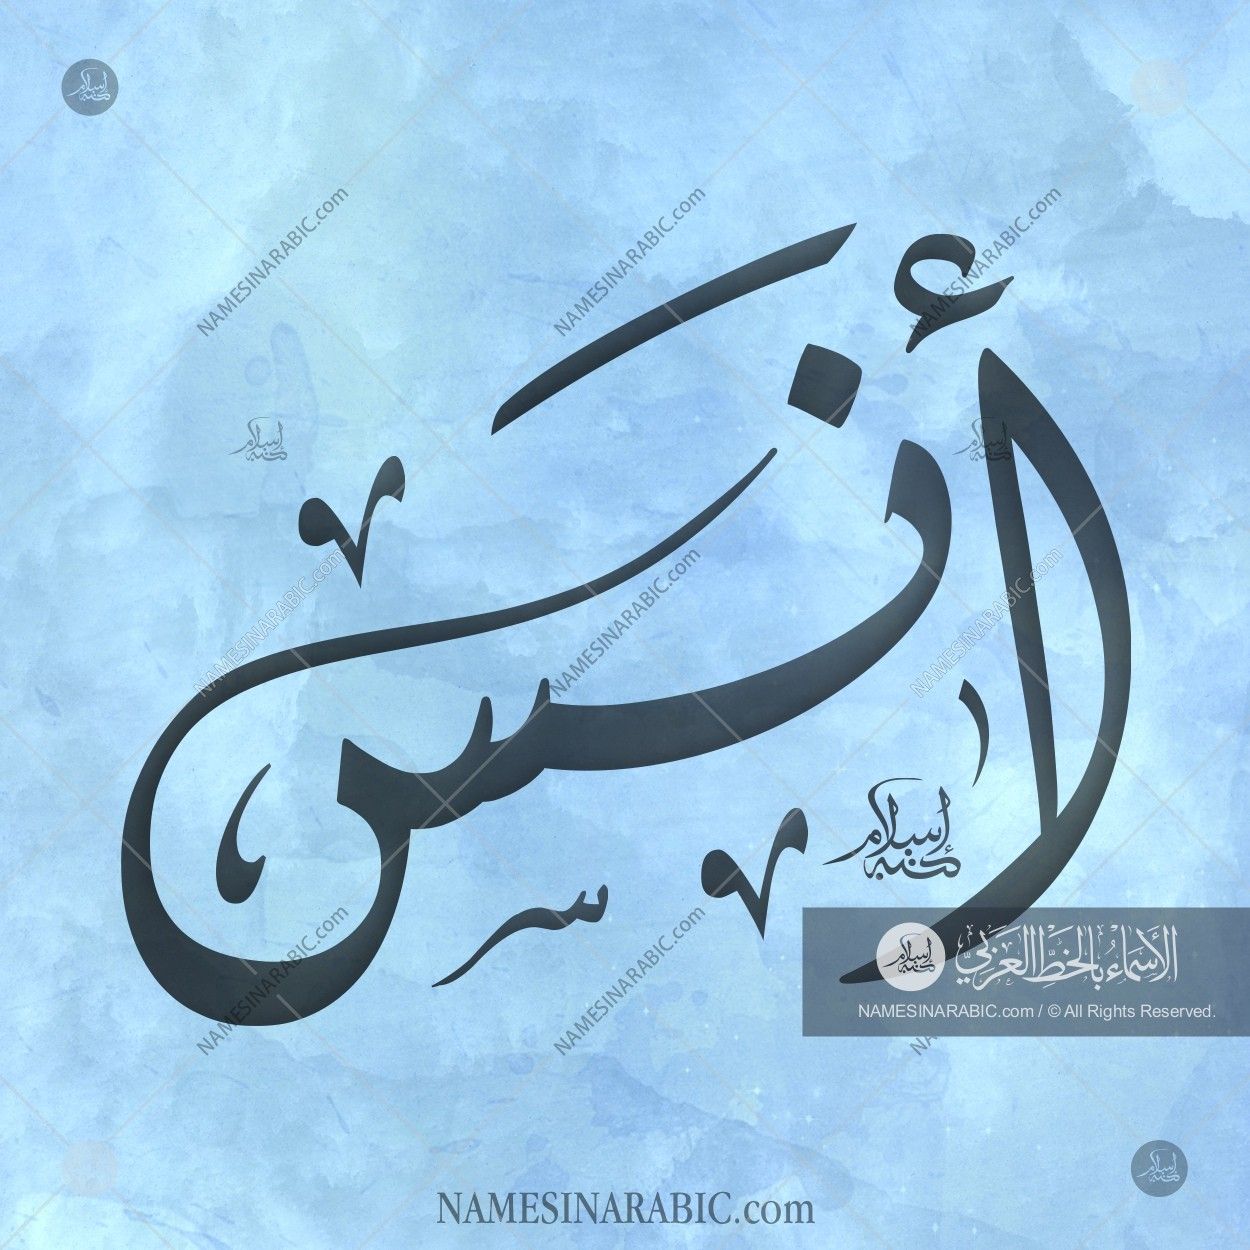 Anas Name In Urdu - HD Wallpaper 